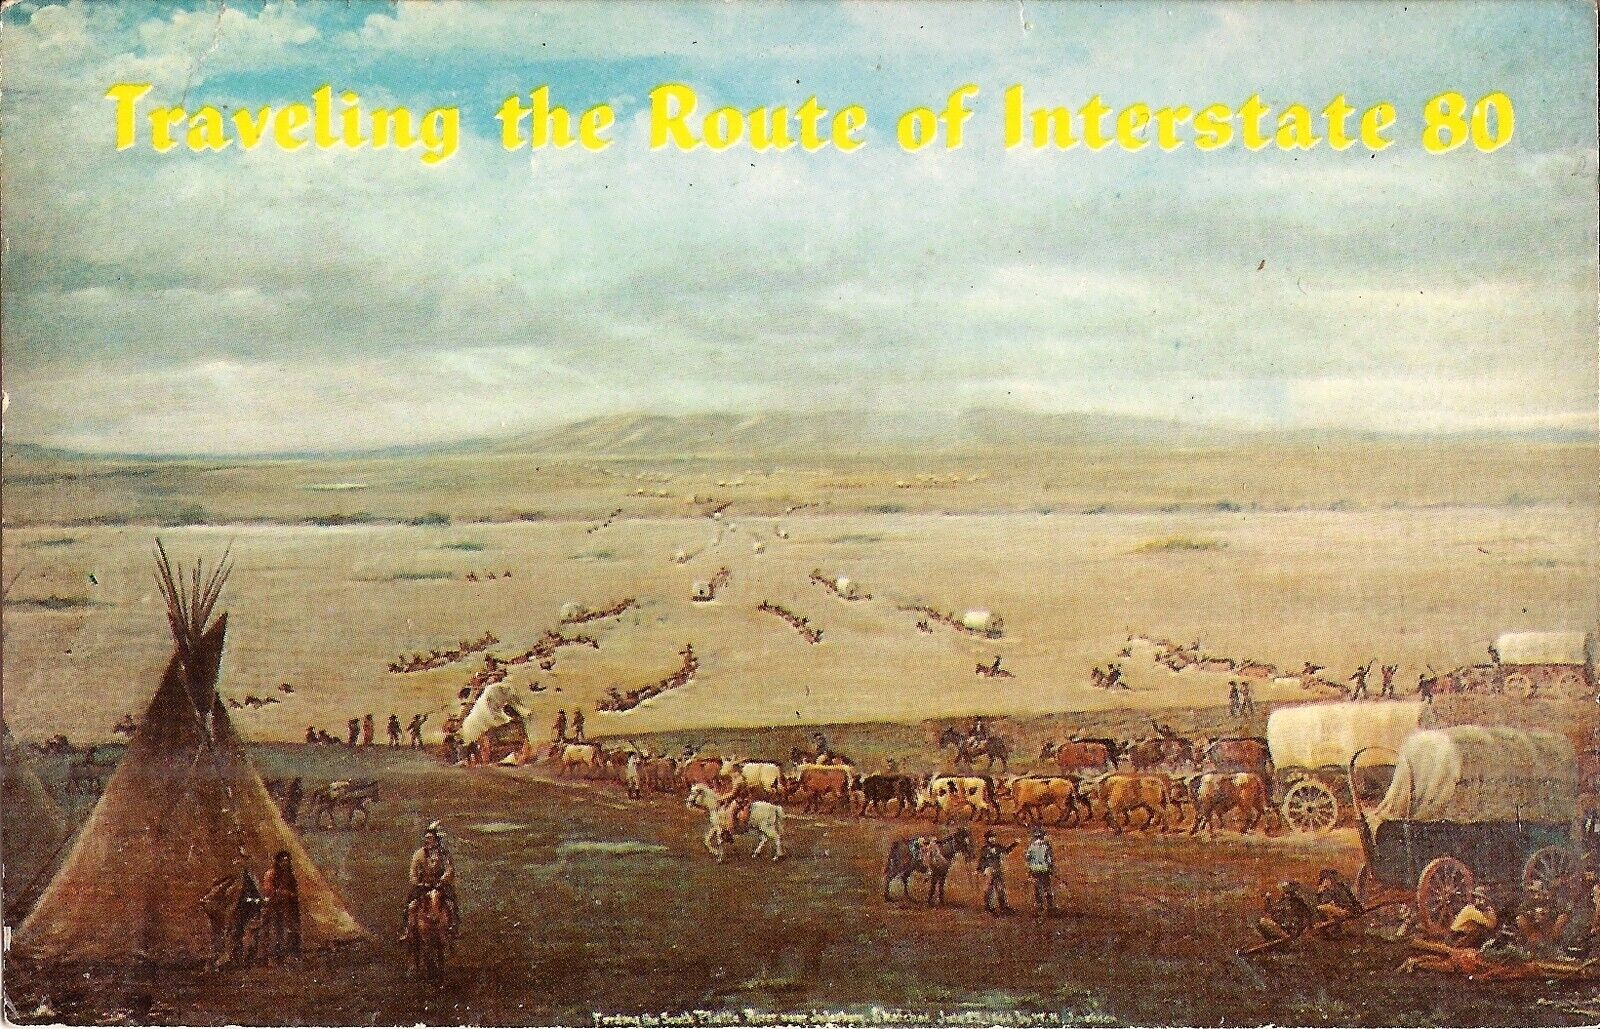 NEBRASKA - Interstate 80 in 1866 - Nebraska Historical Society